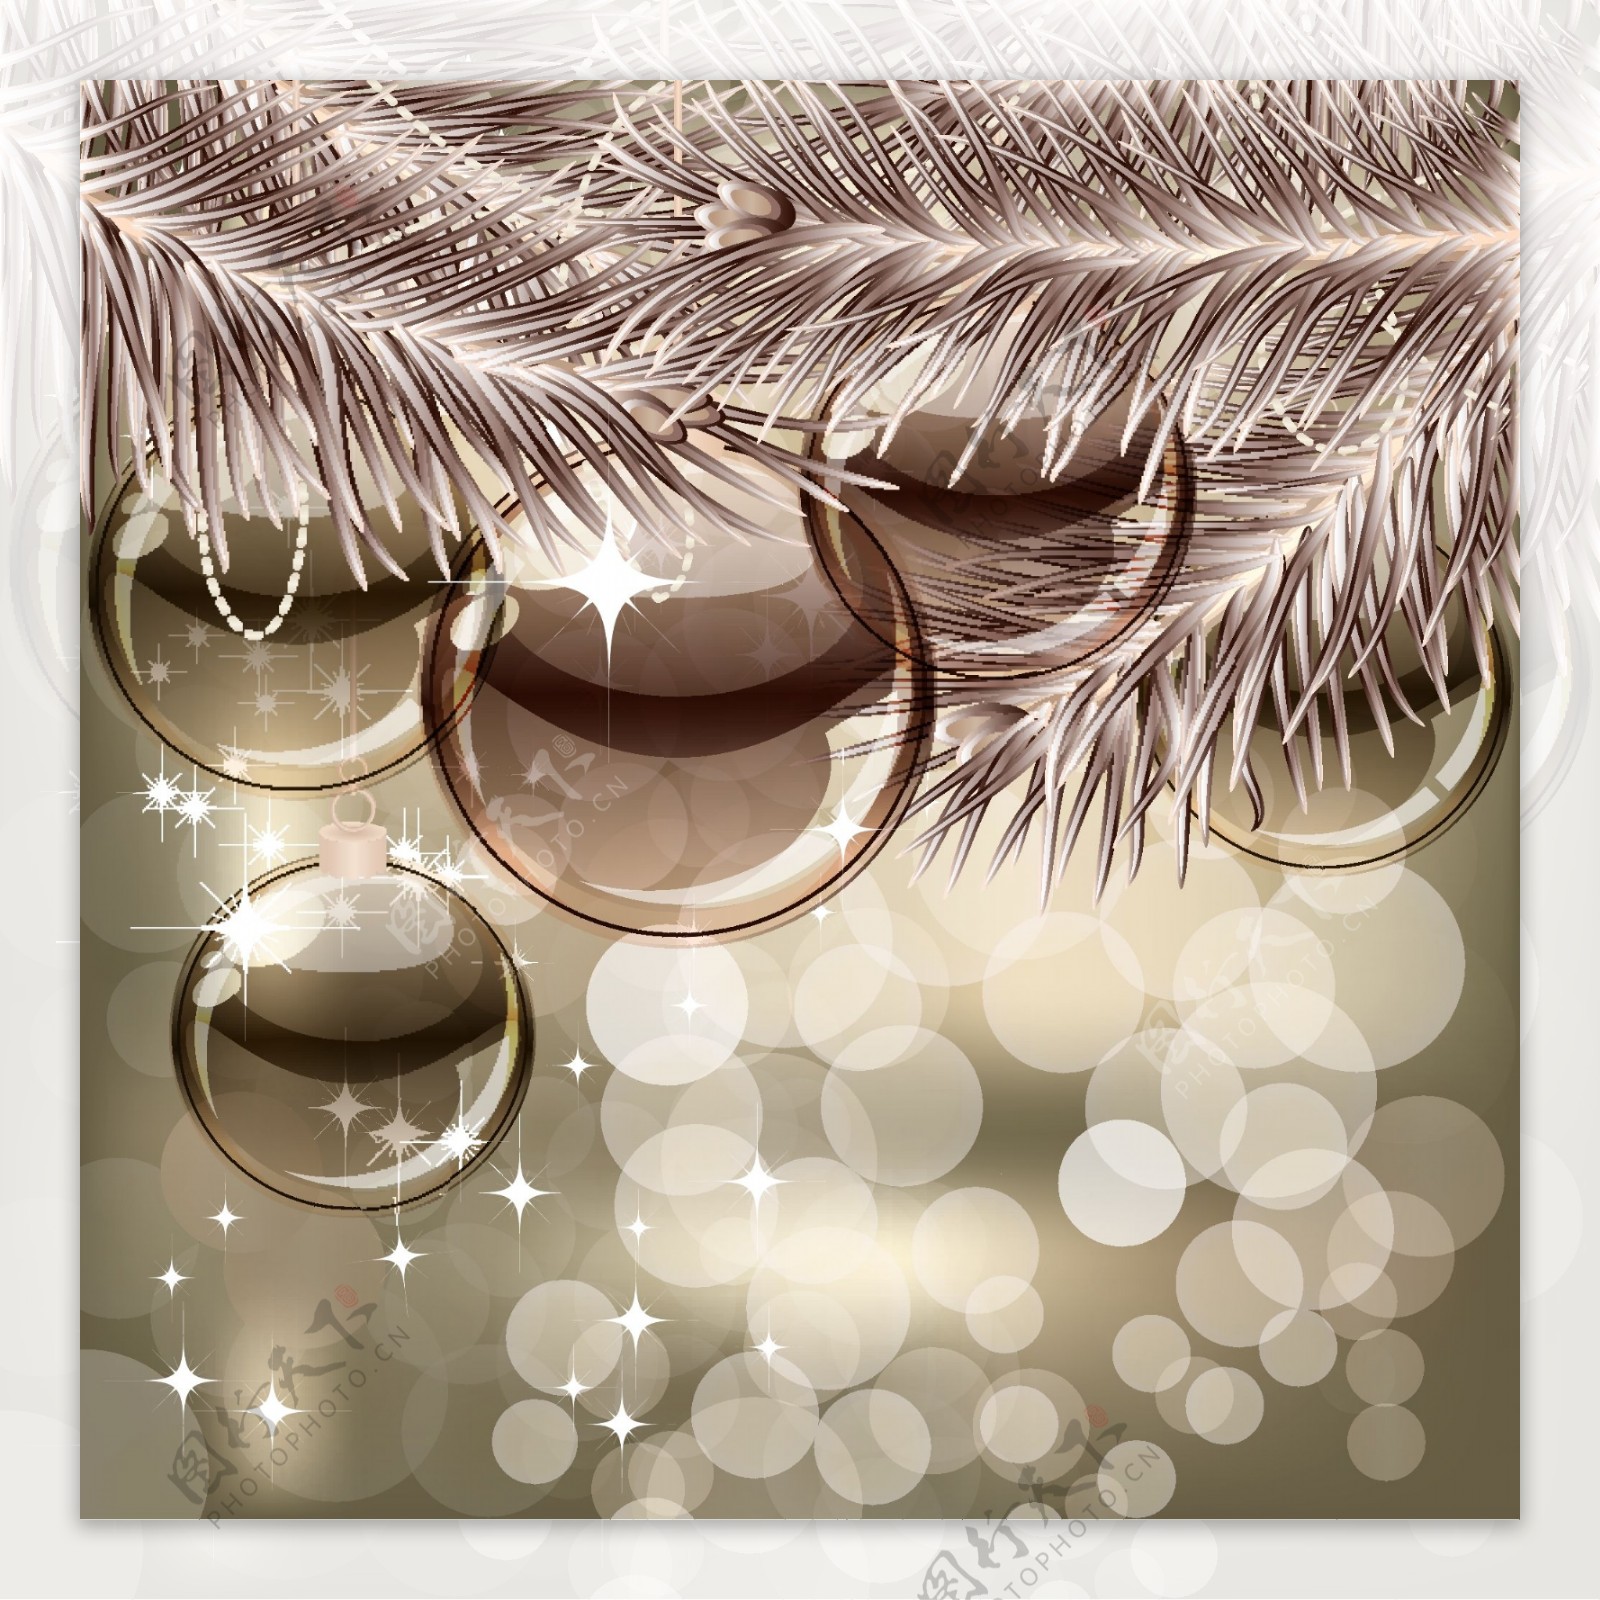 圣诞松树枝与水晶球矢量素材